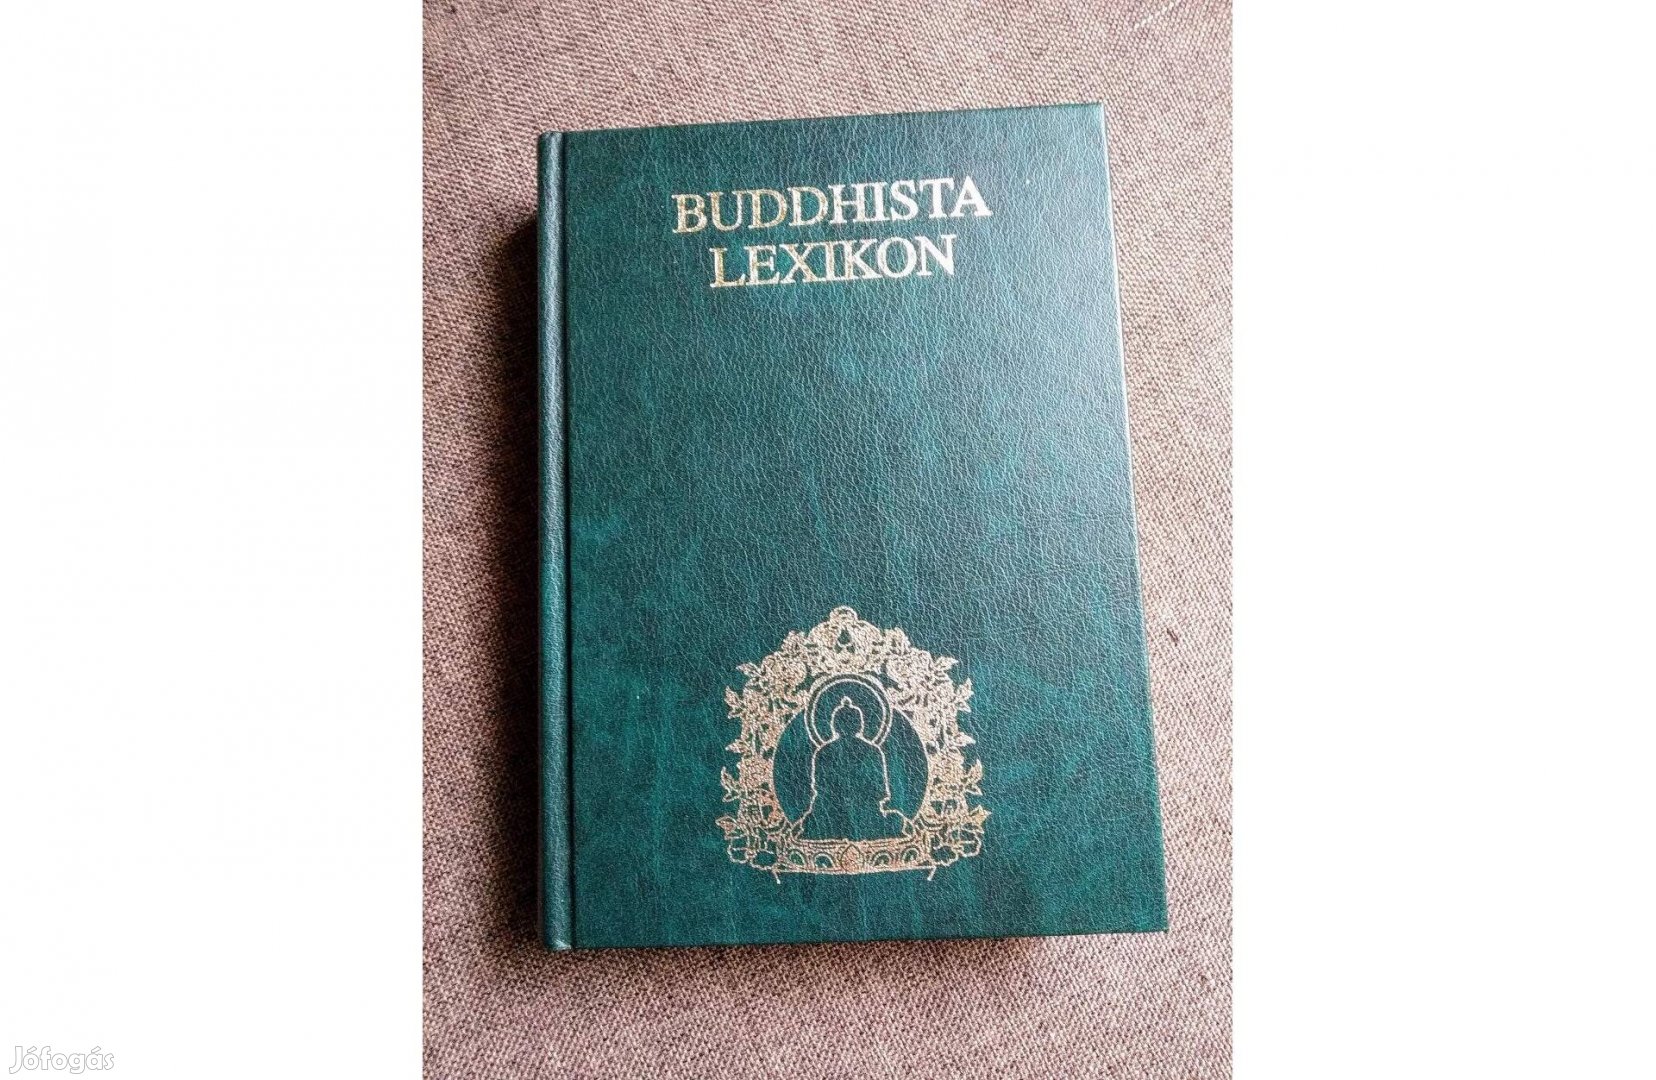 Buddhista lexikon szakszerkesztő: Dr. Hetényi Ernő,